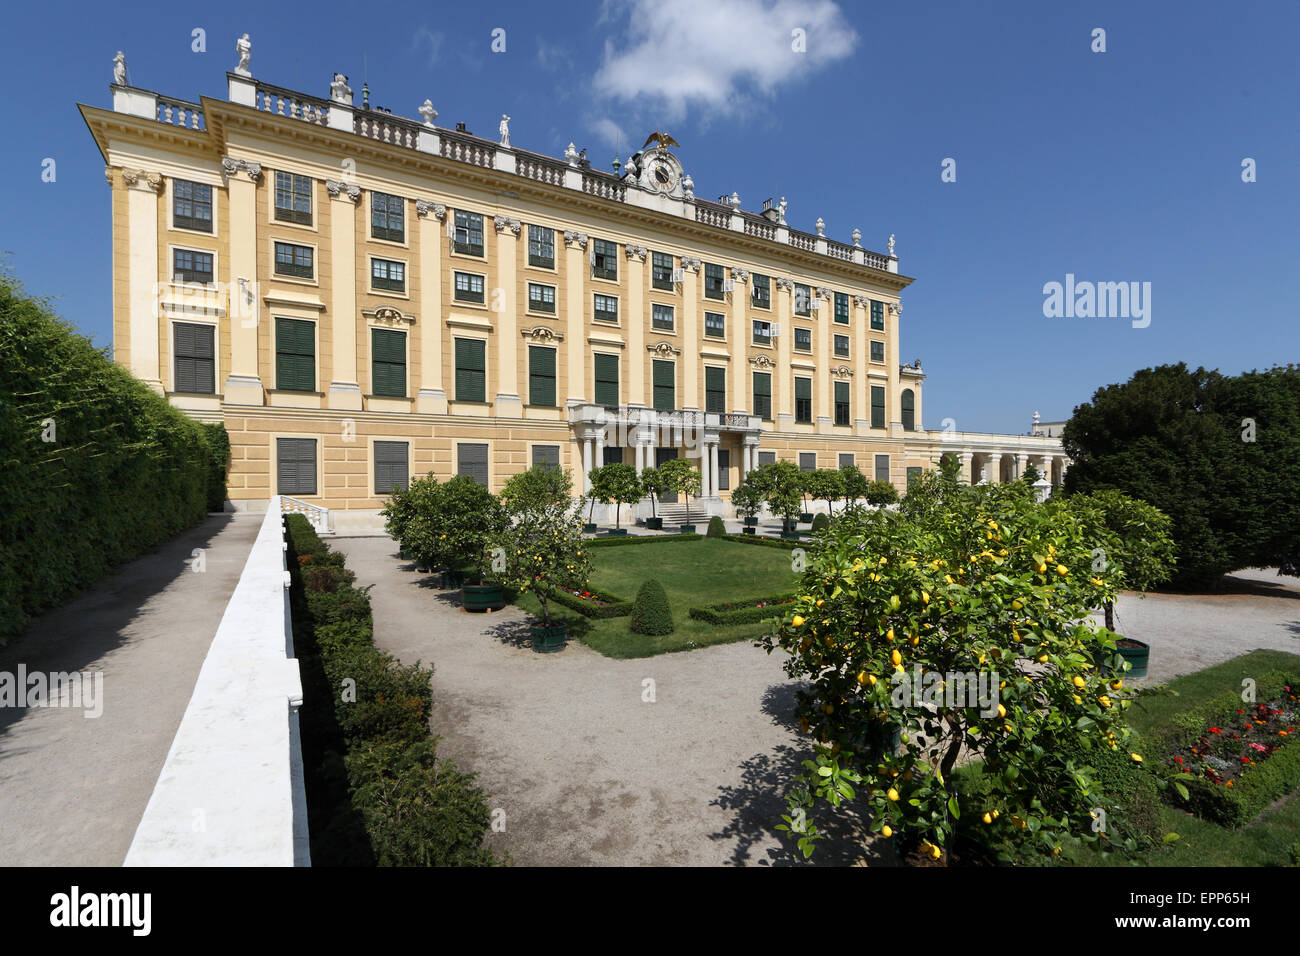 Schloss Schonbrunn palace and gardens, Vienna, Austria Stock Photo